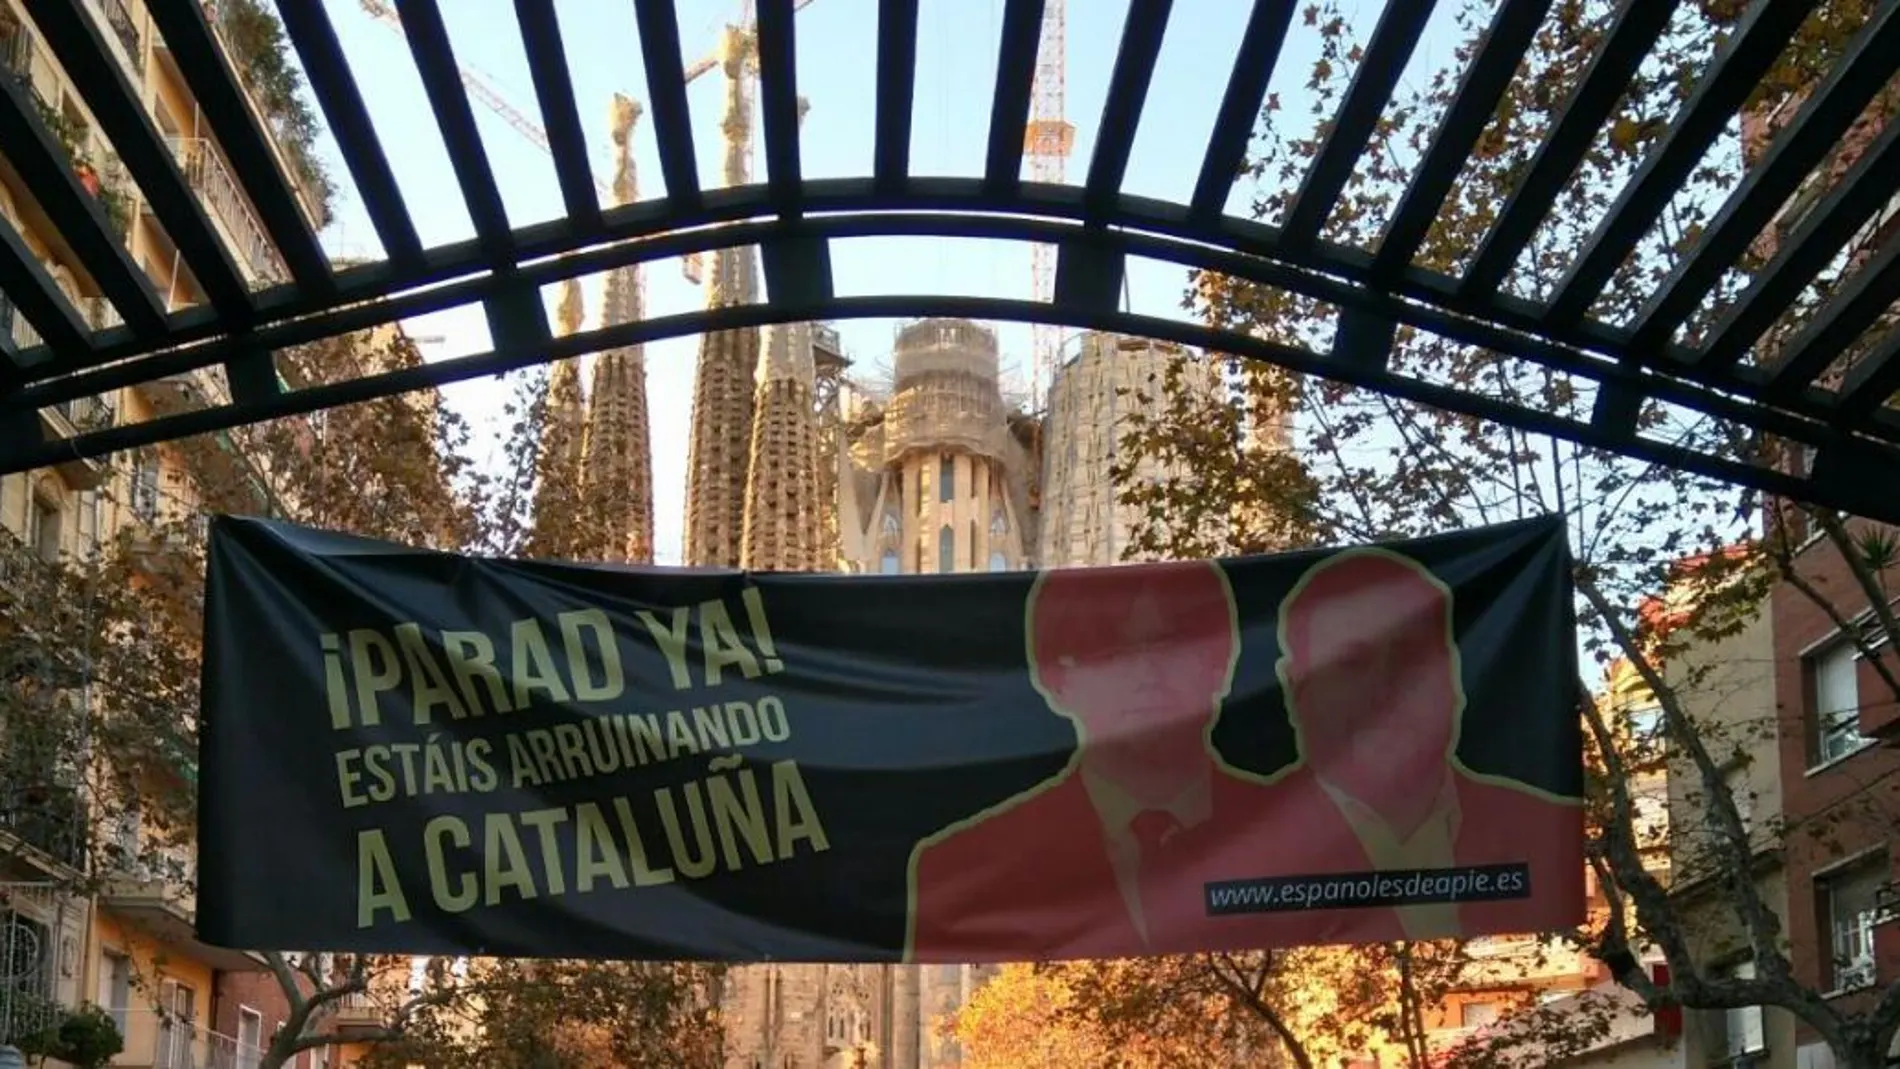 Barcelona amanece llena de pancartas que piden a Puigdemont y Junqueras: «¡Parad ya! Estáis arruinando a Cataluña»